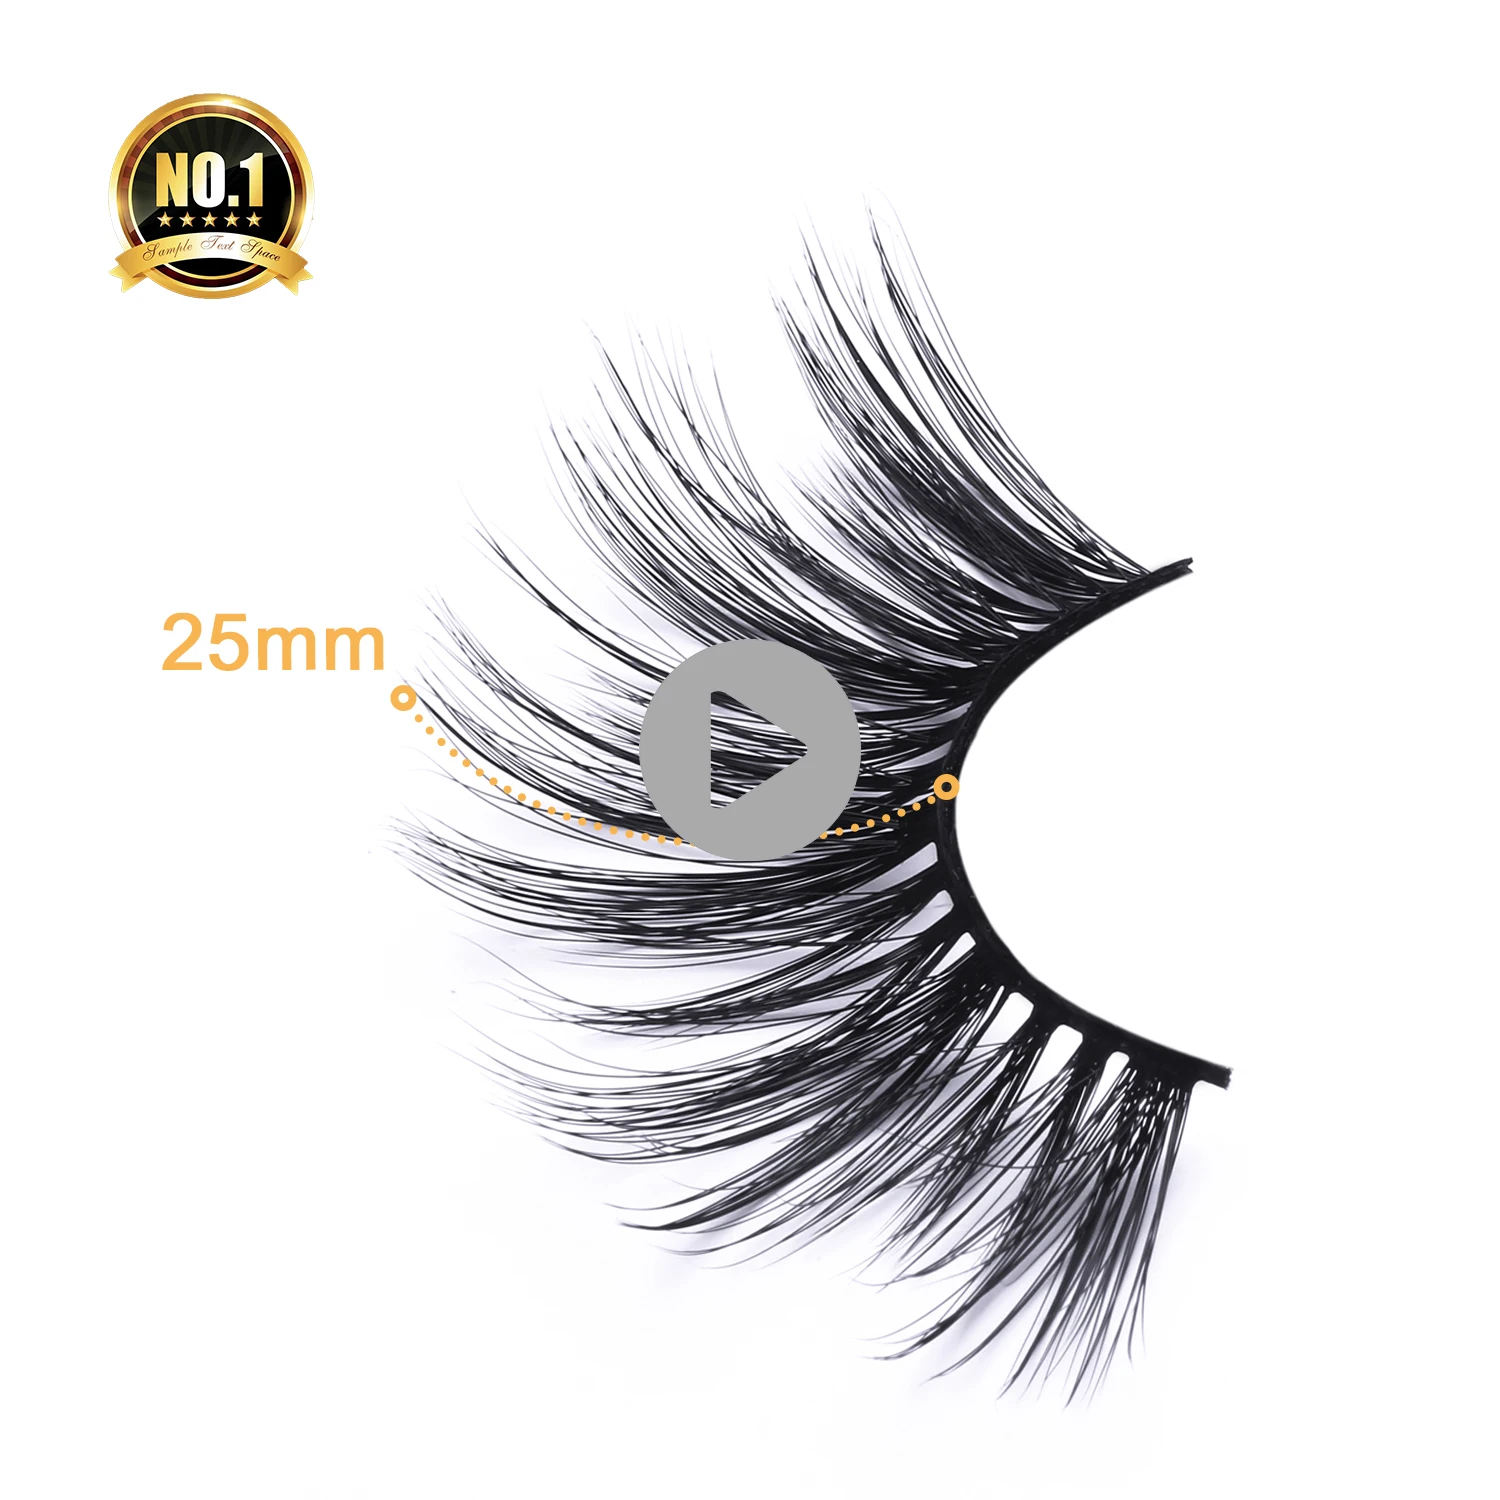 

qingdao wholesale false eyelashes 25mm mink eyelash vendor Private Label custom Package 3D Mink Eyelashes, Black